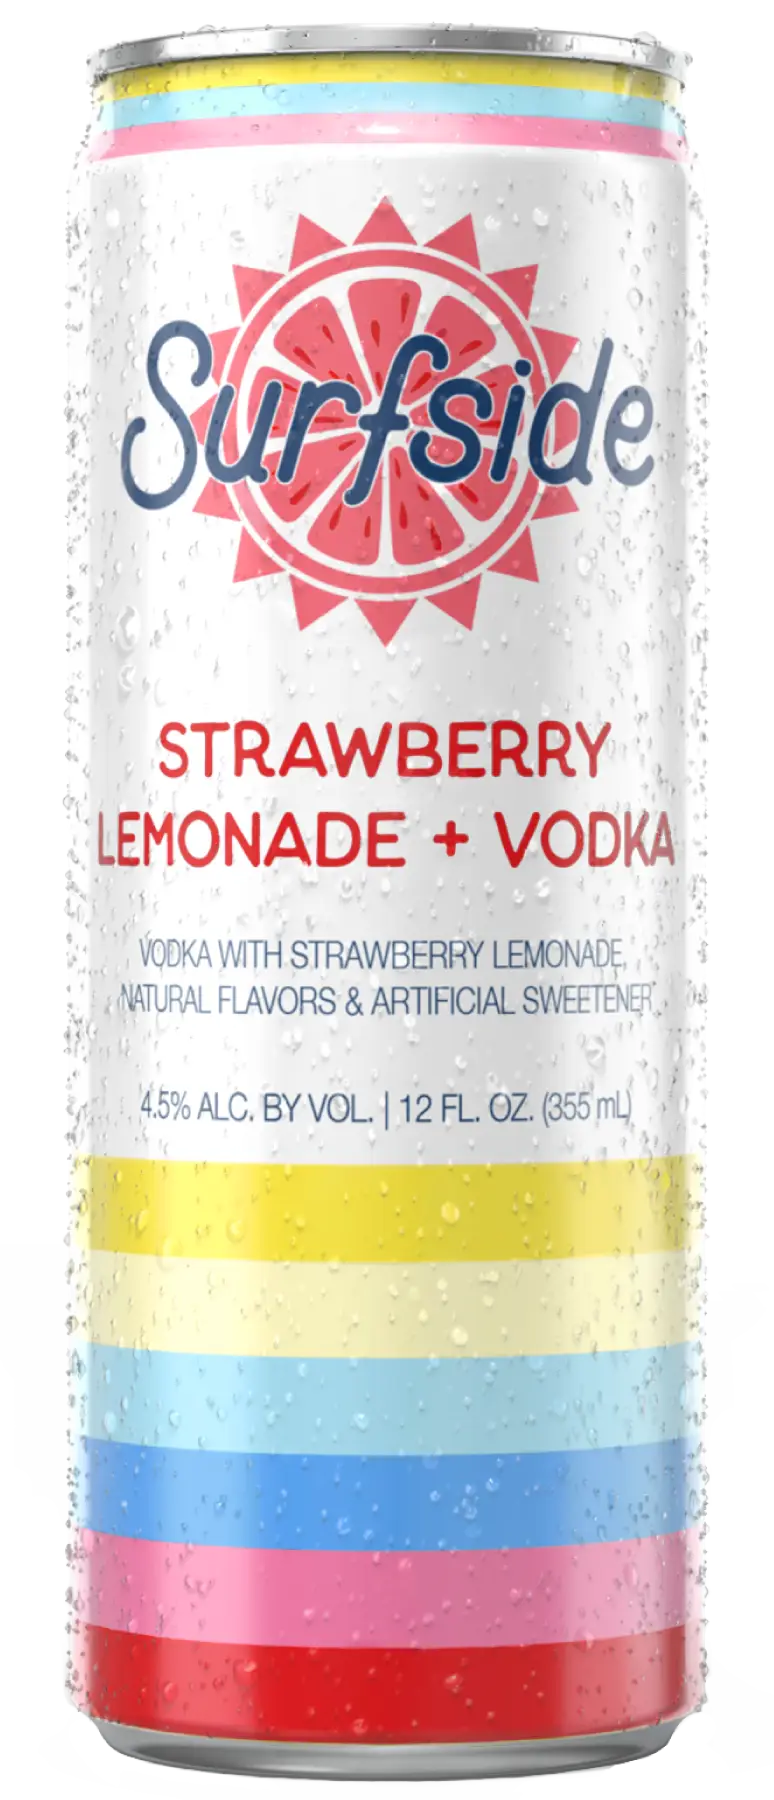 Surfside Strawberry Lemonade + Vodka